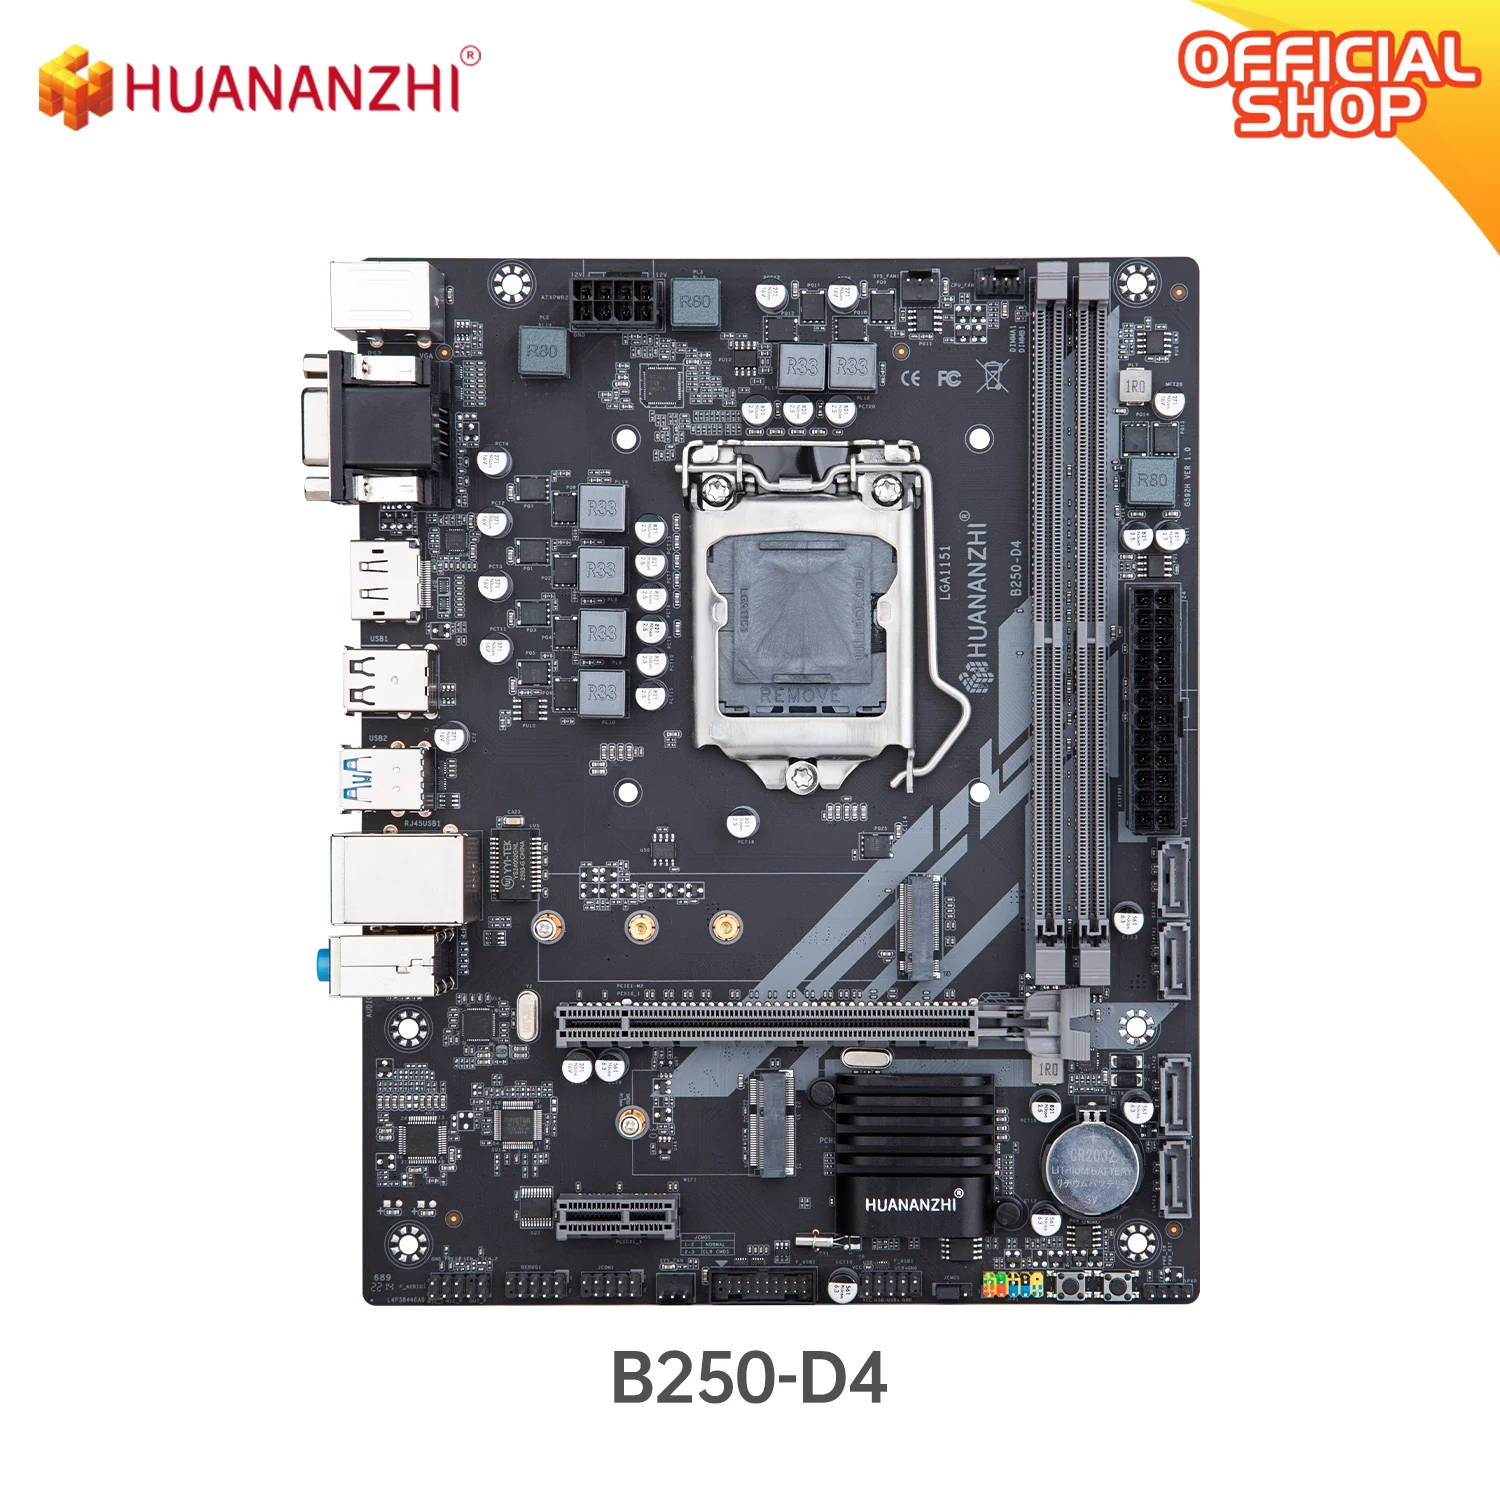 HUANANZHI B250 D4 M-ATX Motherboard Intel LGA 1151 Support 6/7/8/9 generation DDR4 2133/2400/2666MHz 32GB M.2 SATA3 USB3.0 VGA